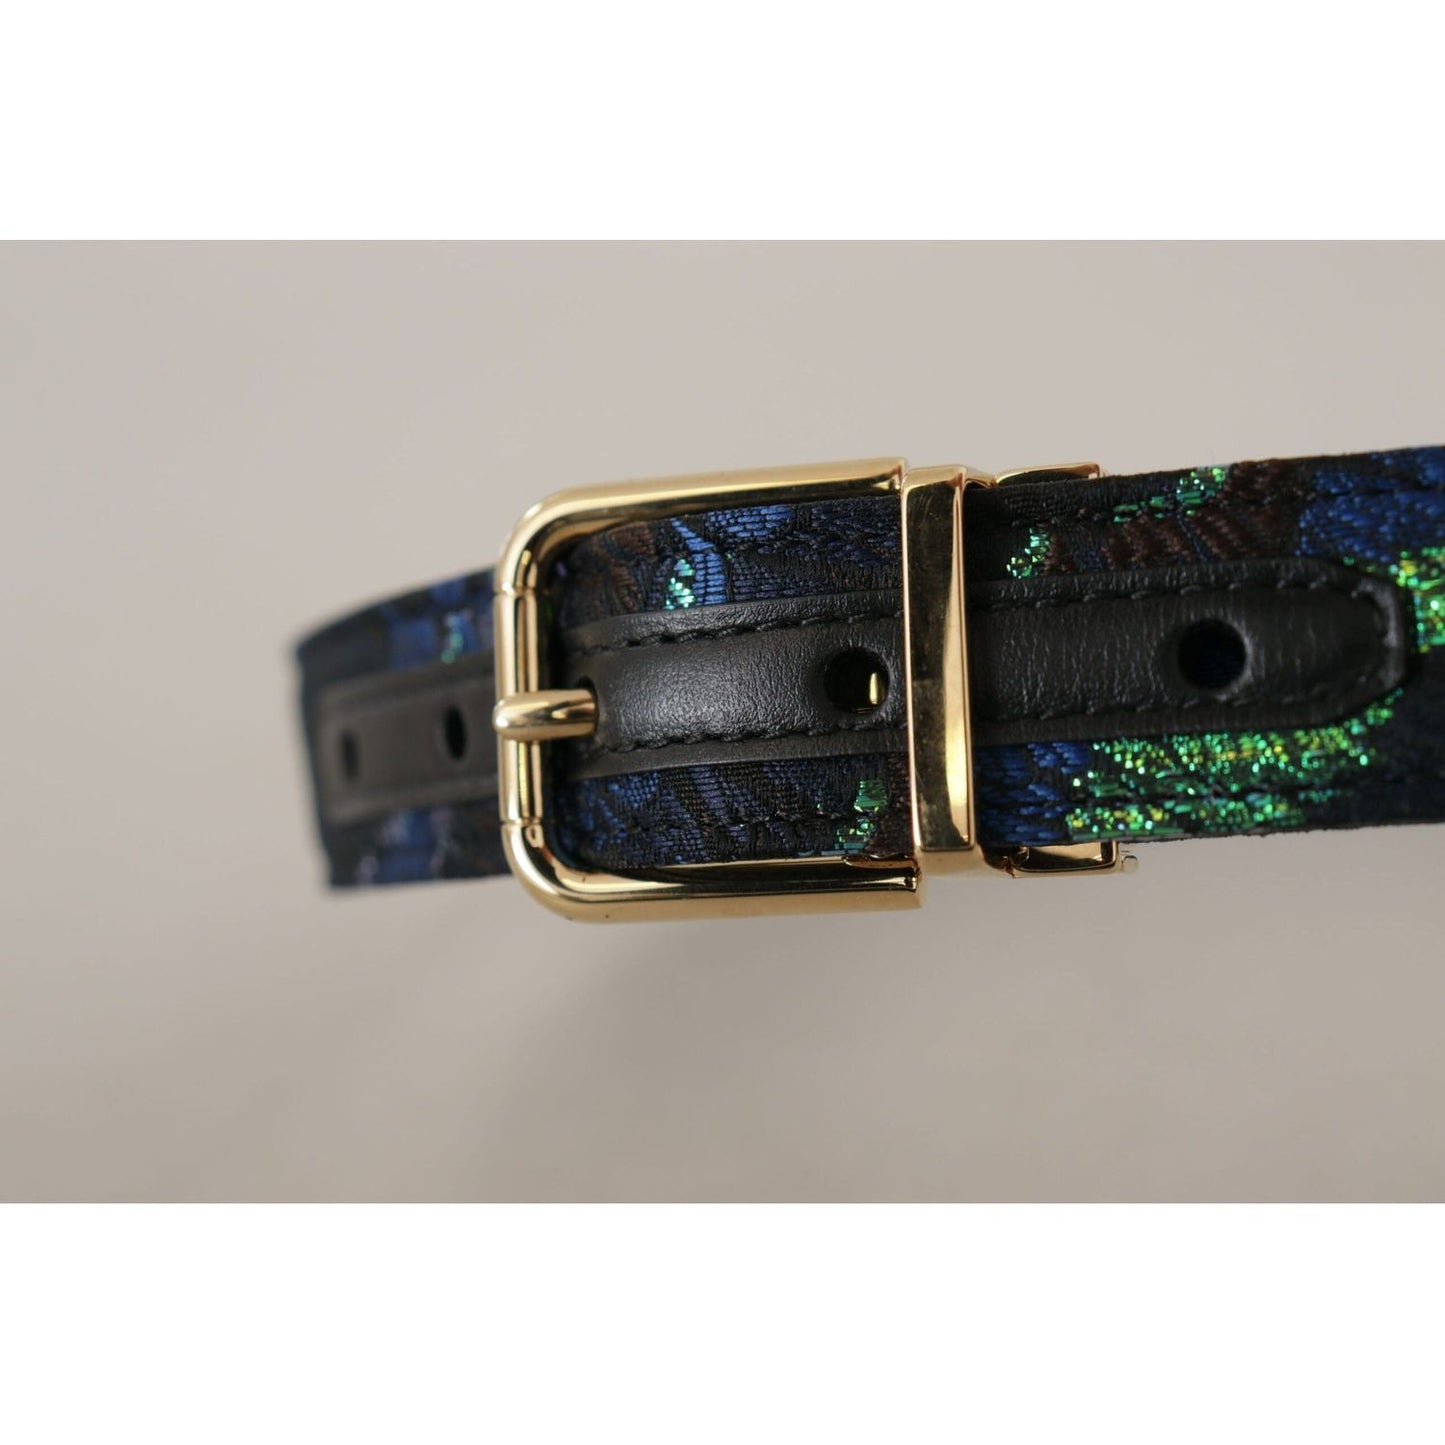 Dolce & Gabbana Elegant Multicolor Leather Belt with Gold Buckle multicolor-floral-jacquard-gold-metal-buckle-belt